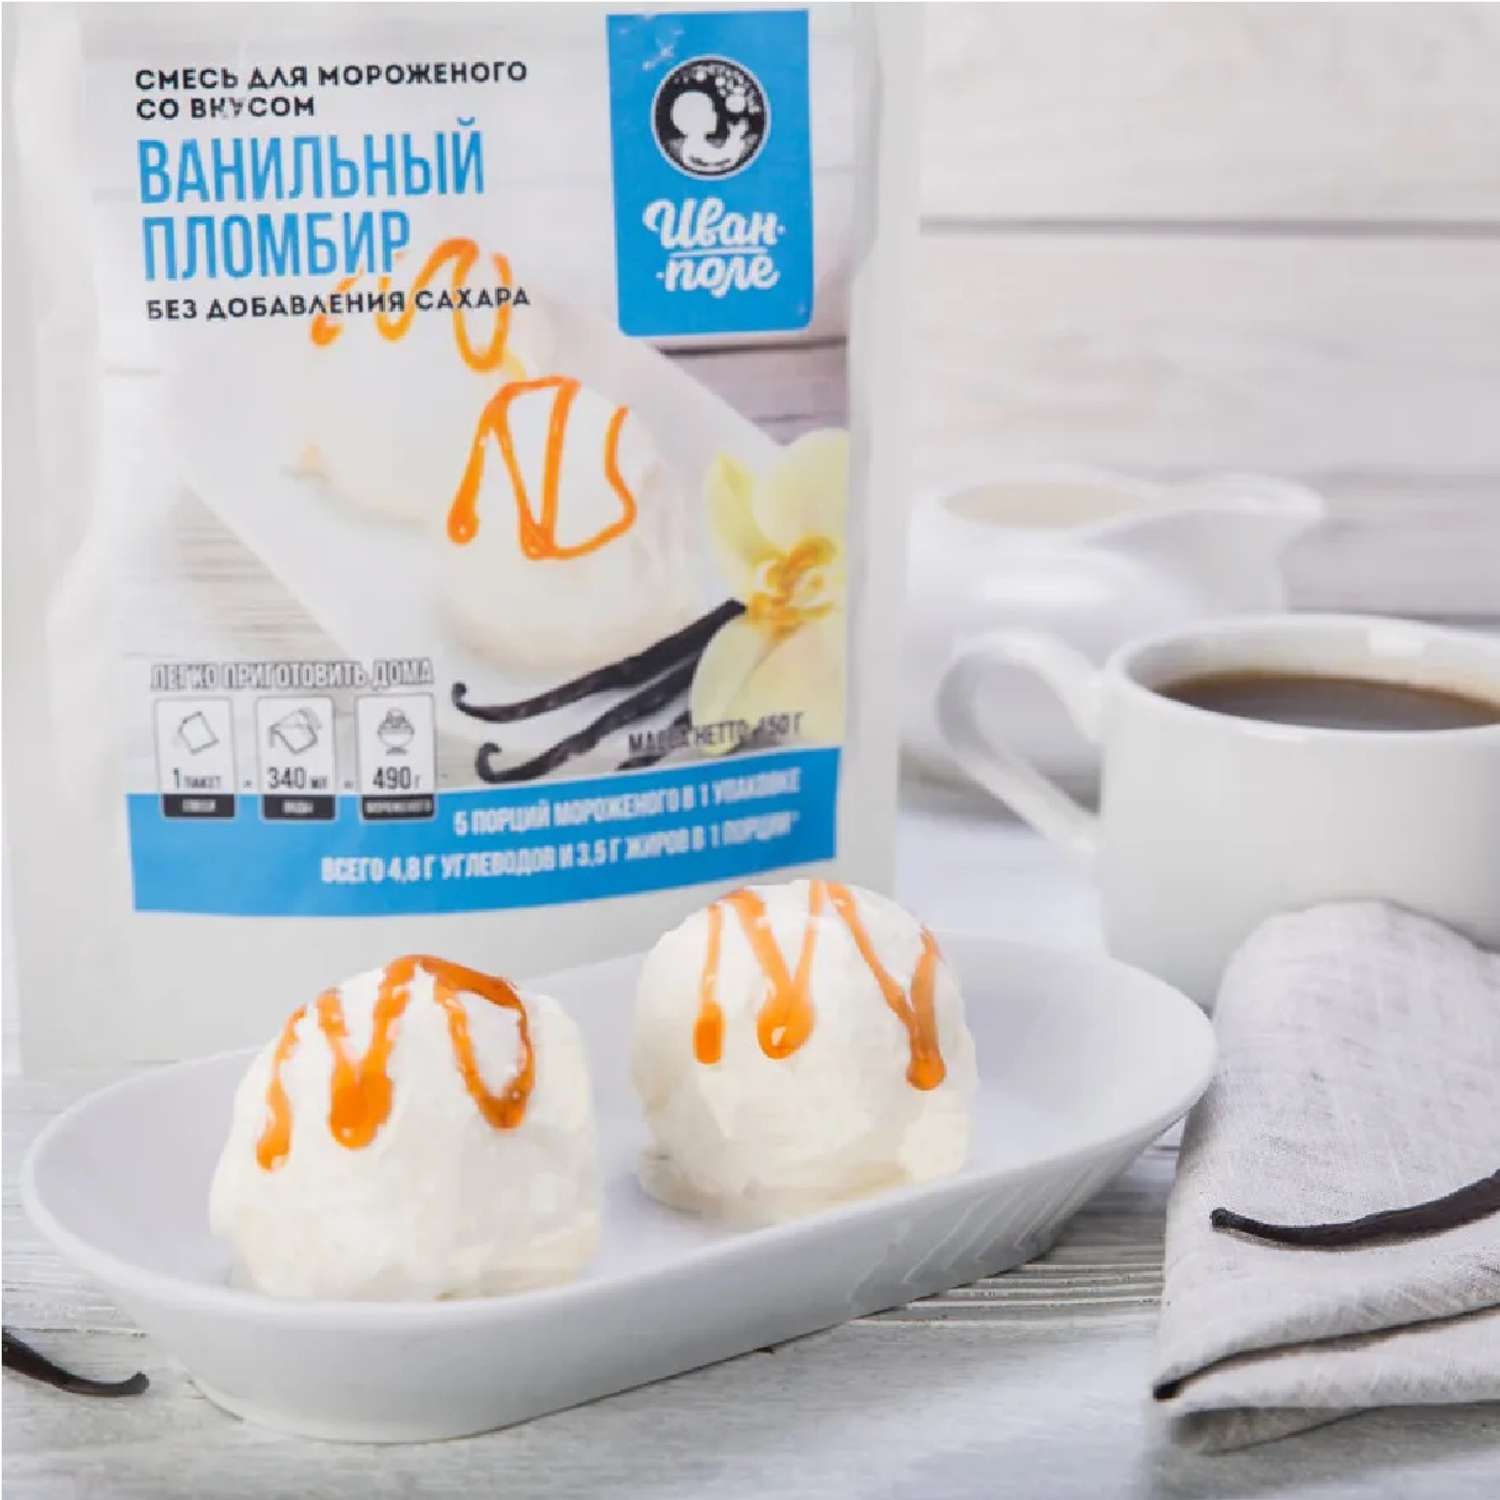 Смесь для мороженого Иван-поле Ванильный пломбир без сахара 150 г - фото 3